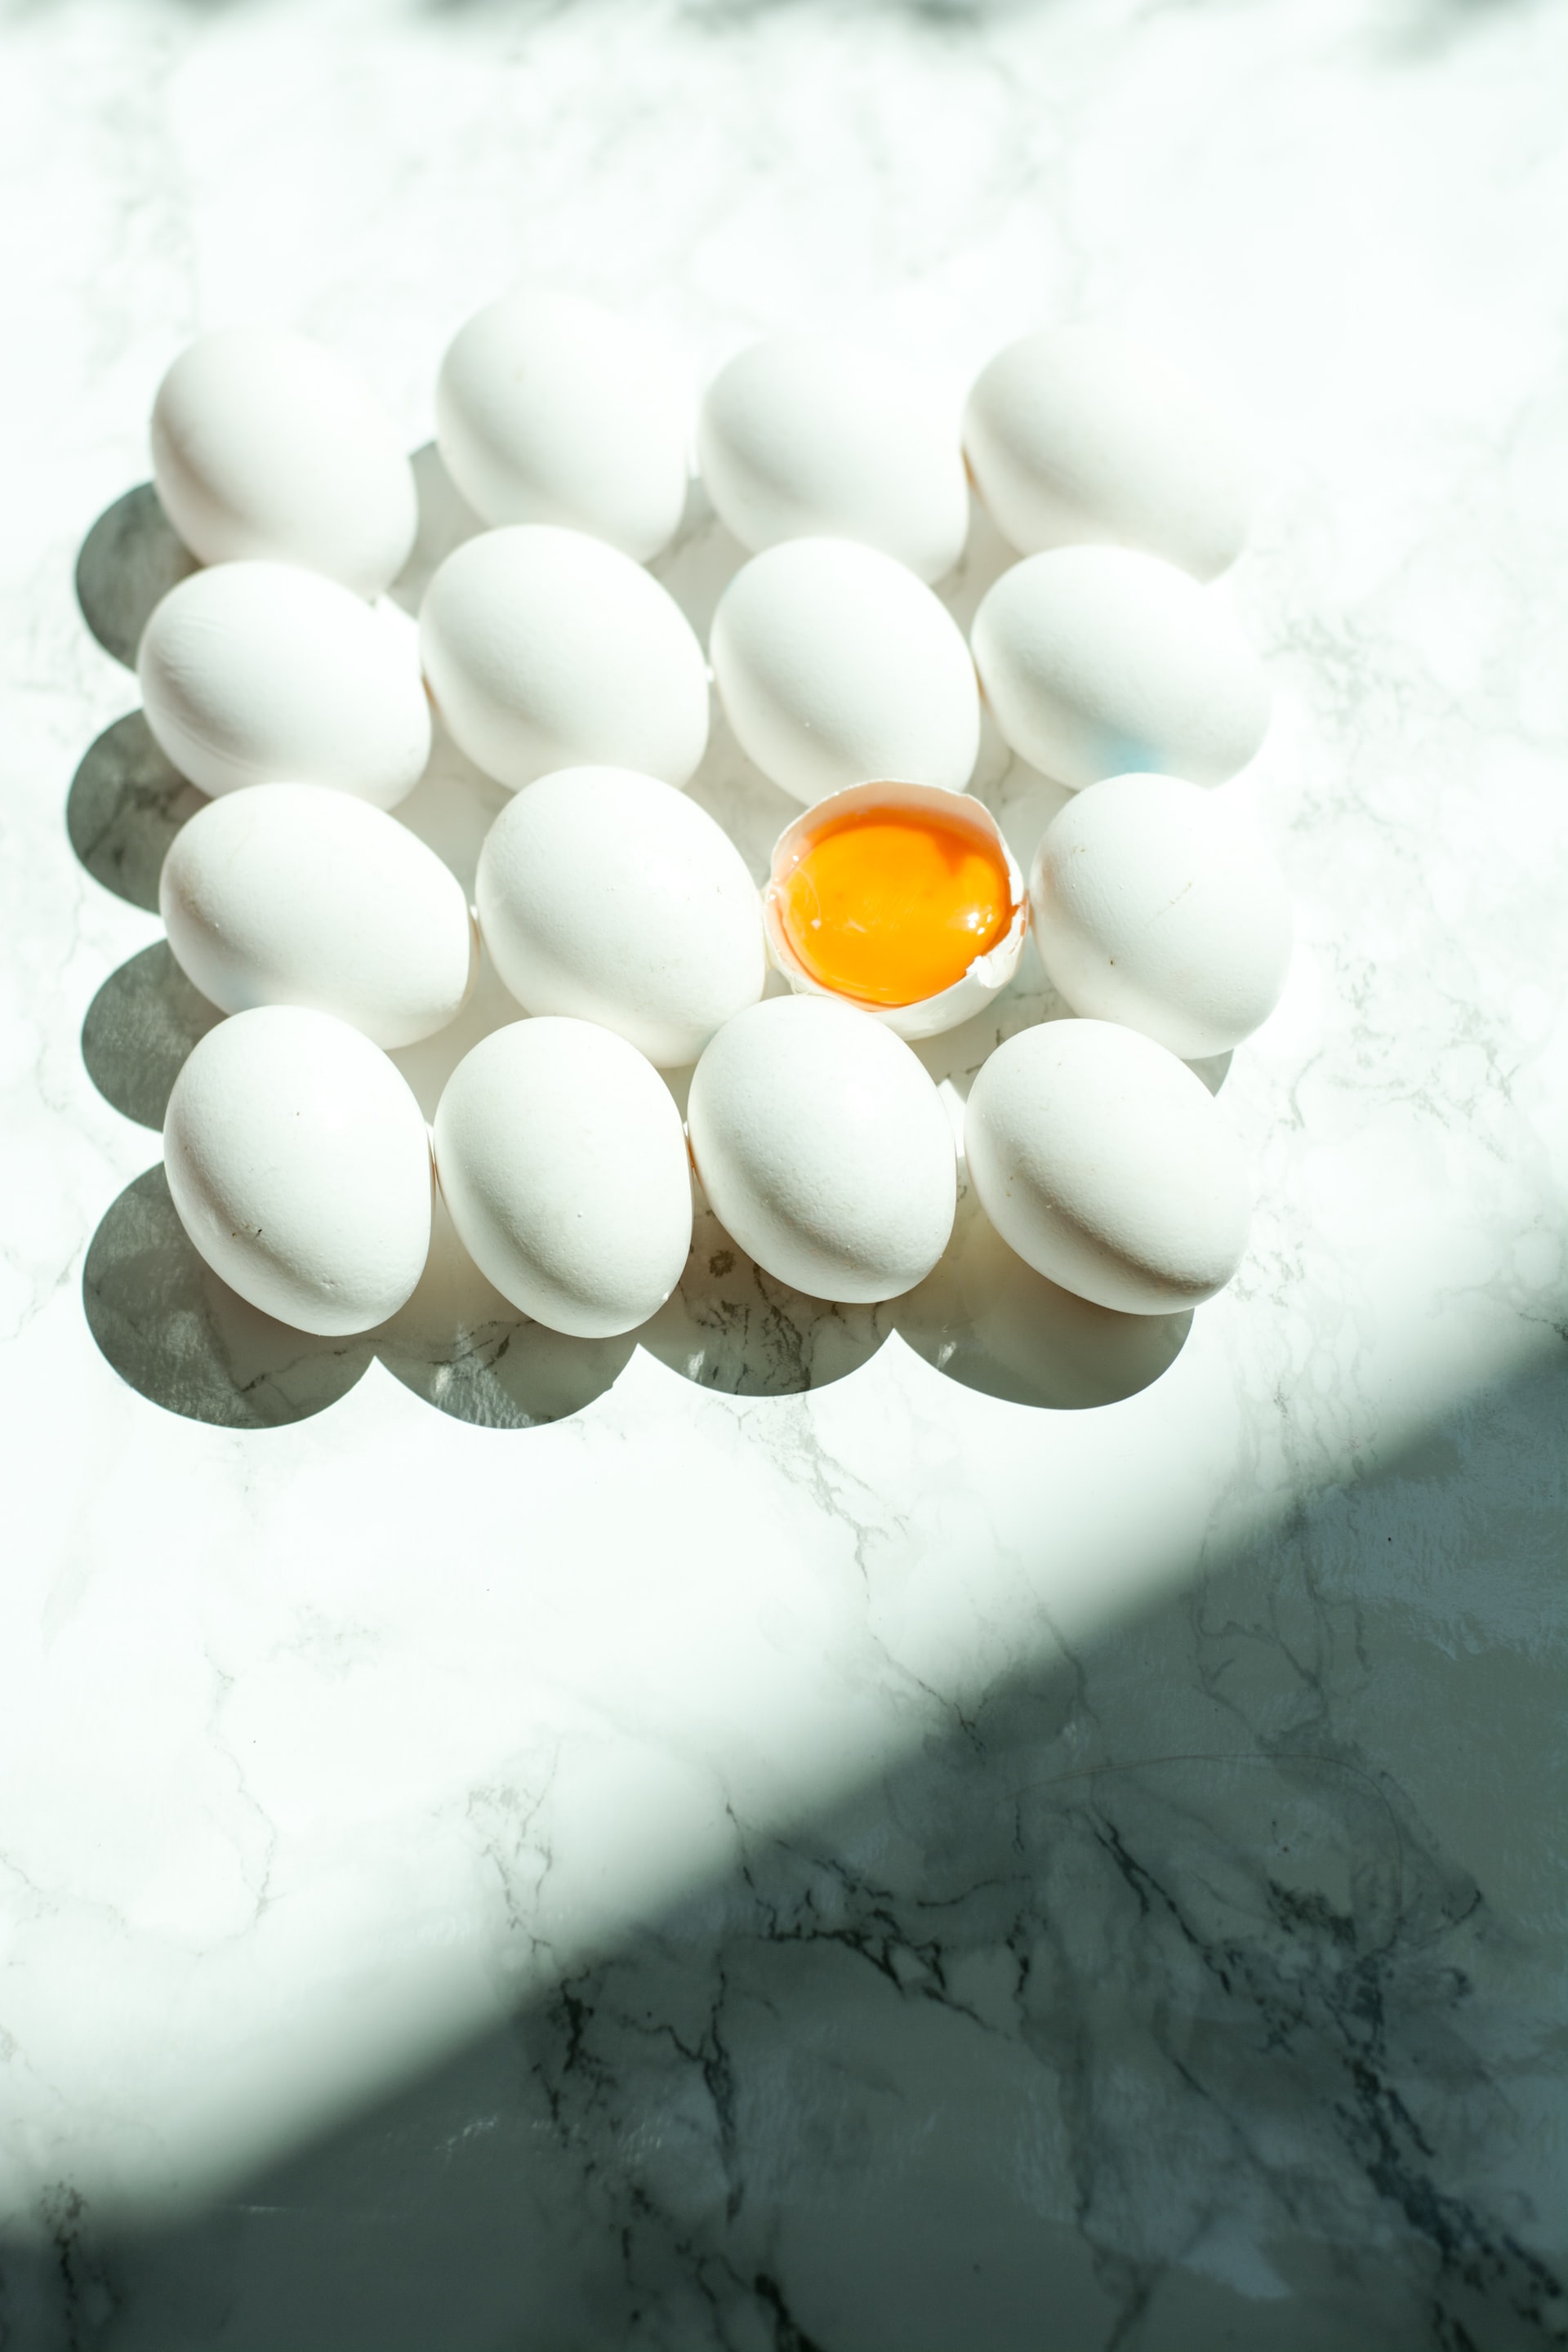 Η viral δίαιτα με τα βραστά αυγά υπόσχεται άμεση απώλεια βάρους - Δες πόσο αποτελεσματική είναι